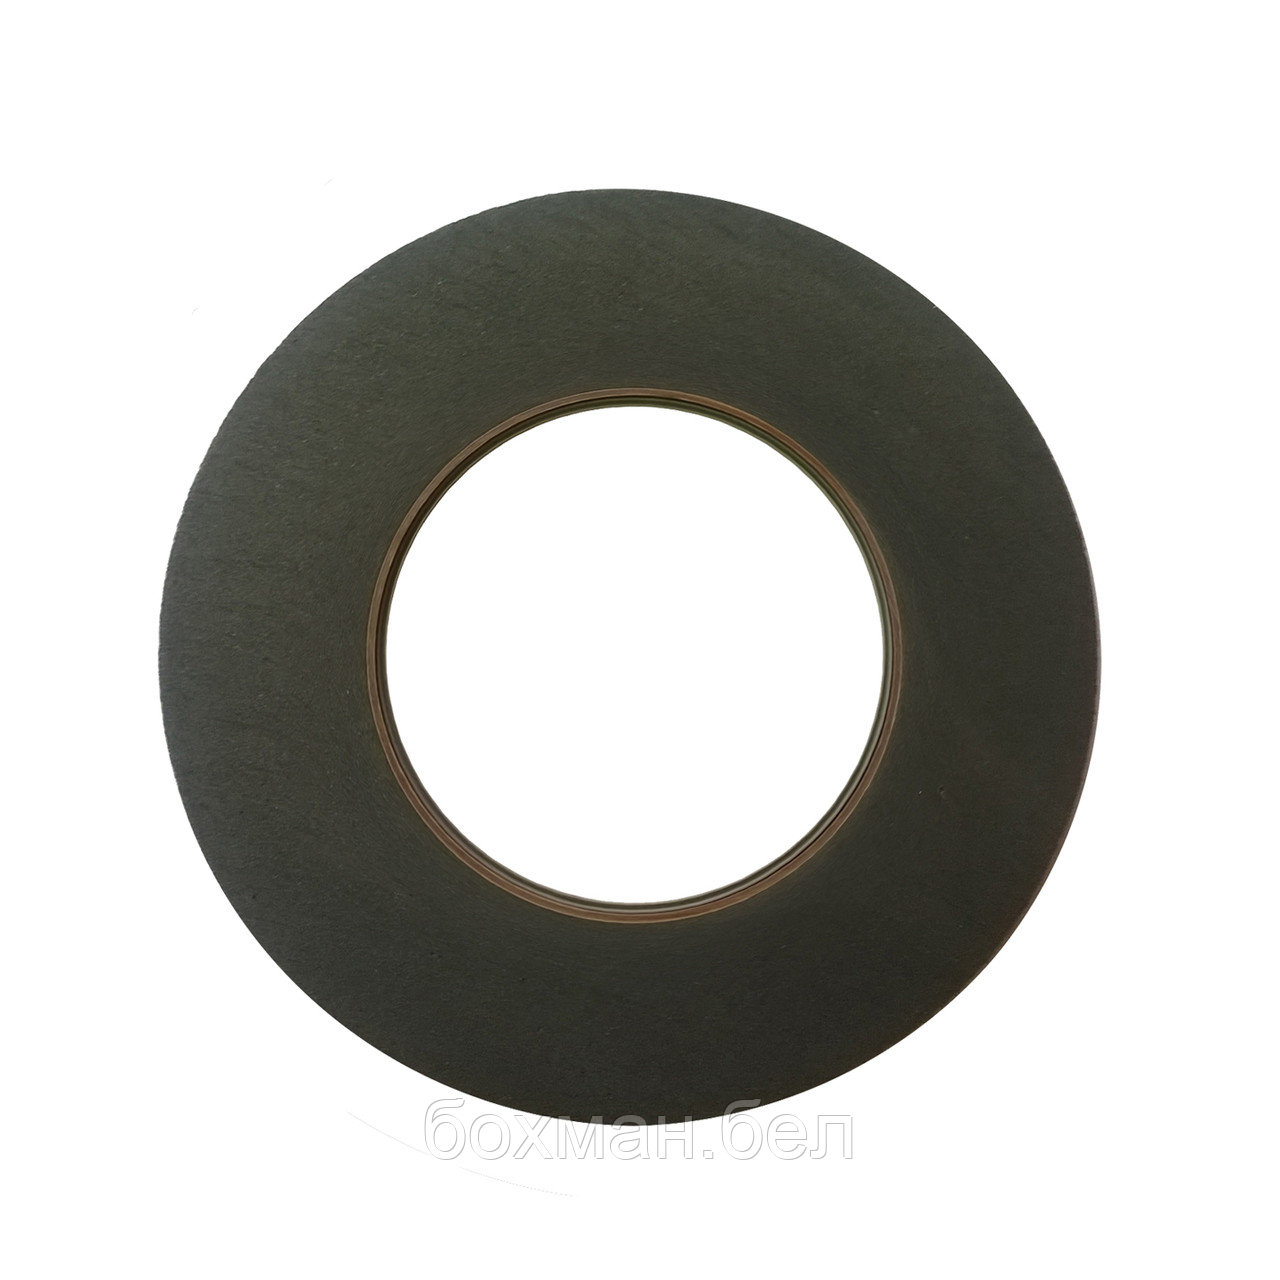 Шлифовальный круг для снятия Low-e покрытия Elastic 125x10x76.2